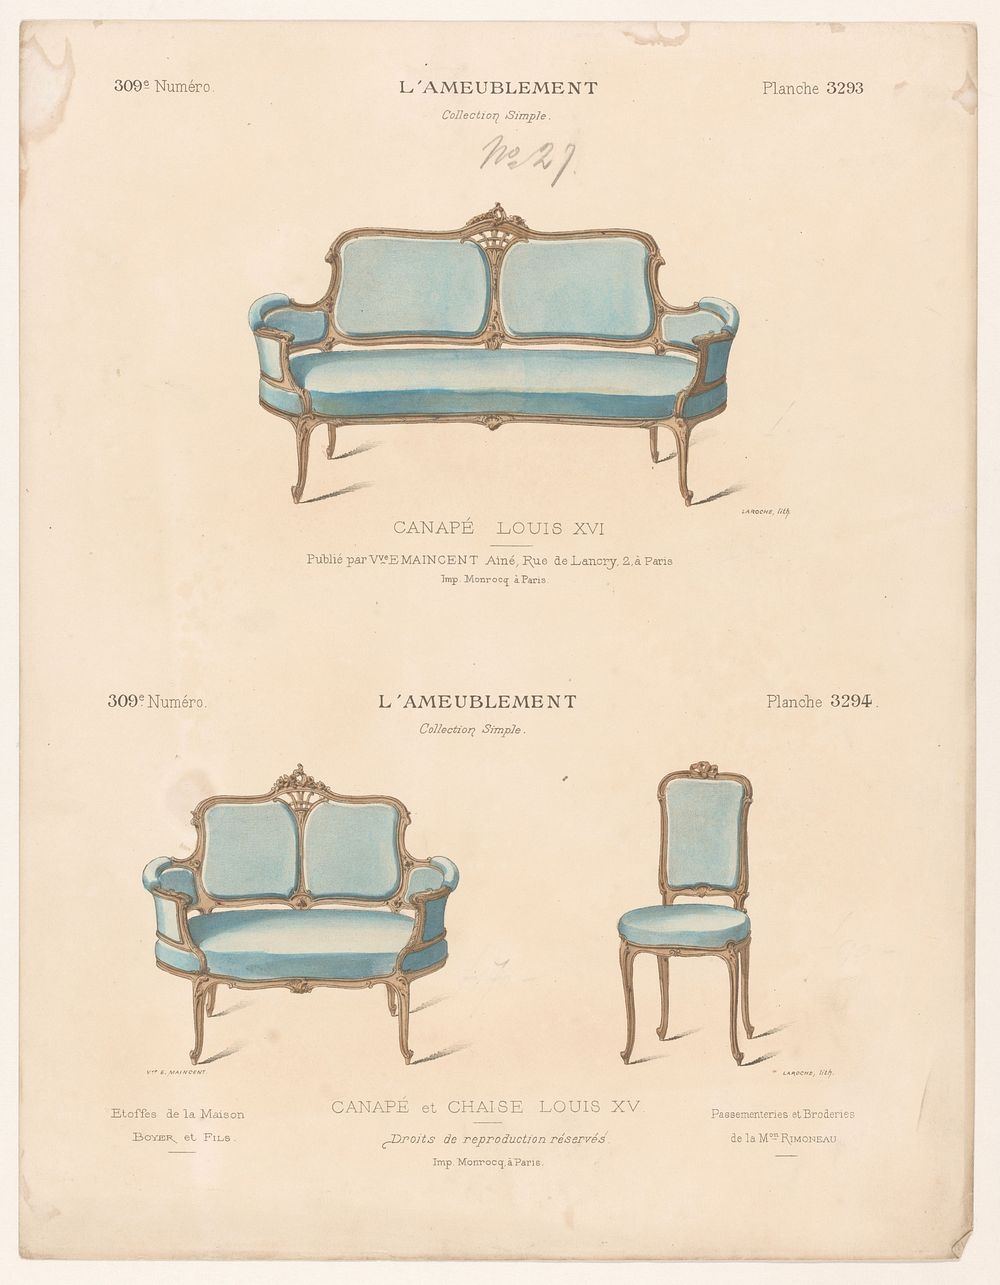 Twee canapés en stoel (1895) by Léon Laroche, Monrocq and weduwe Eugène Maincent